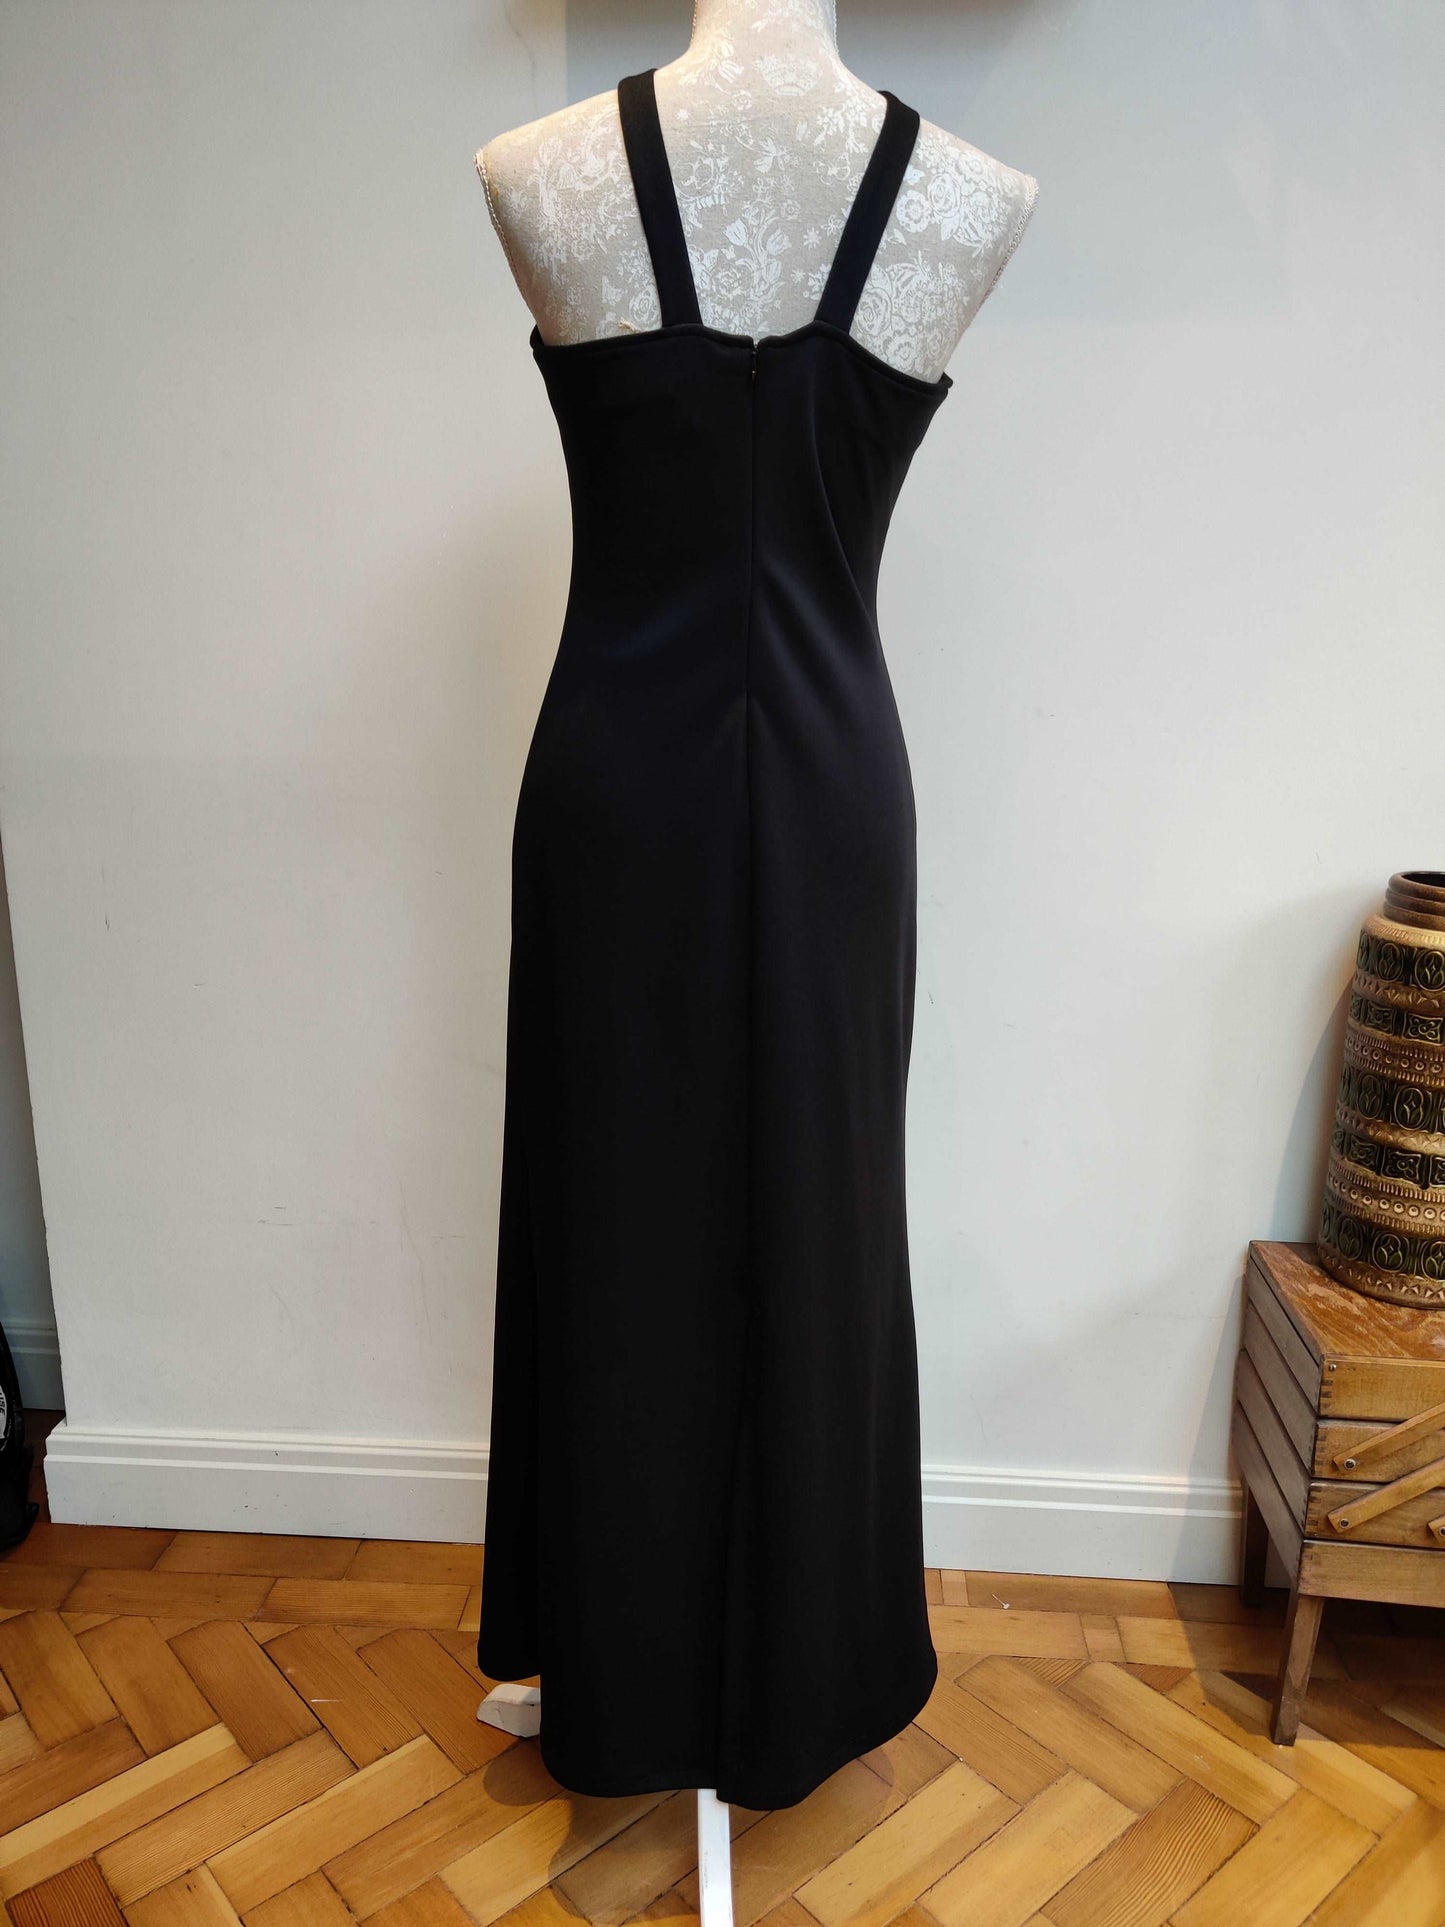 Halterneck style vintage maxi dress in black.